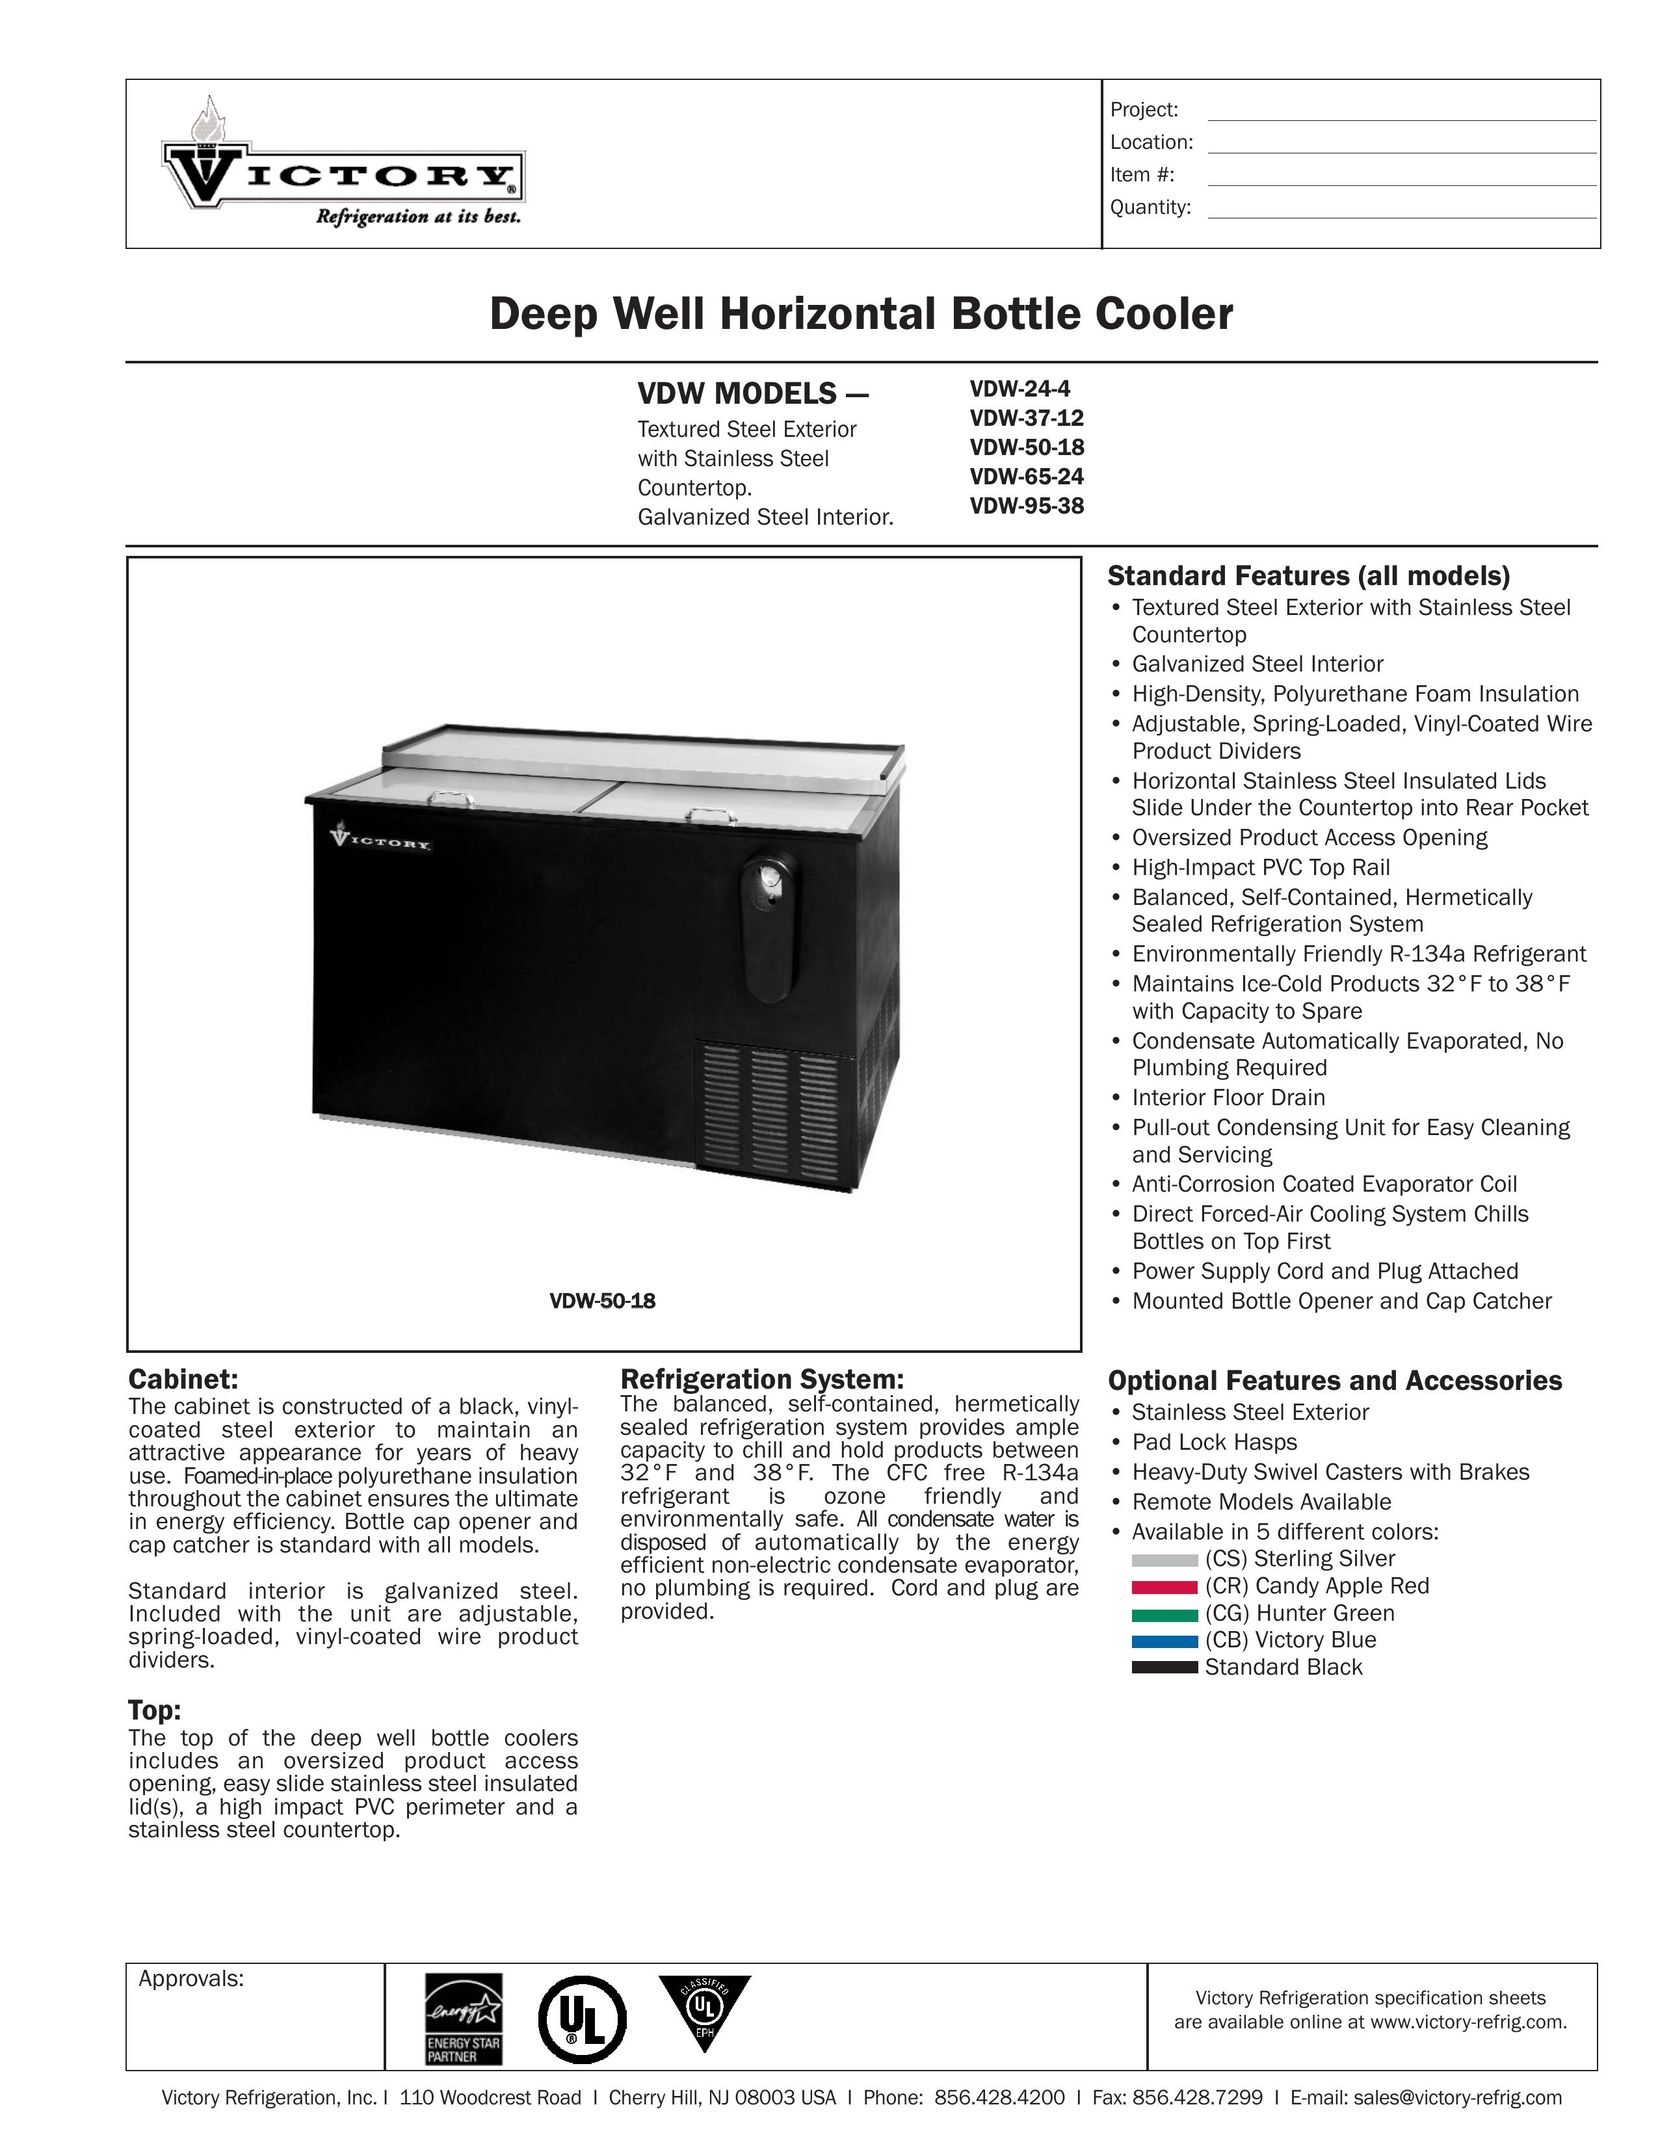 Victory Refrigeration VDW-50-18 Beverage Dispenser User Manual